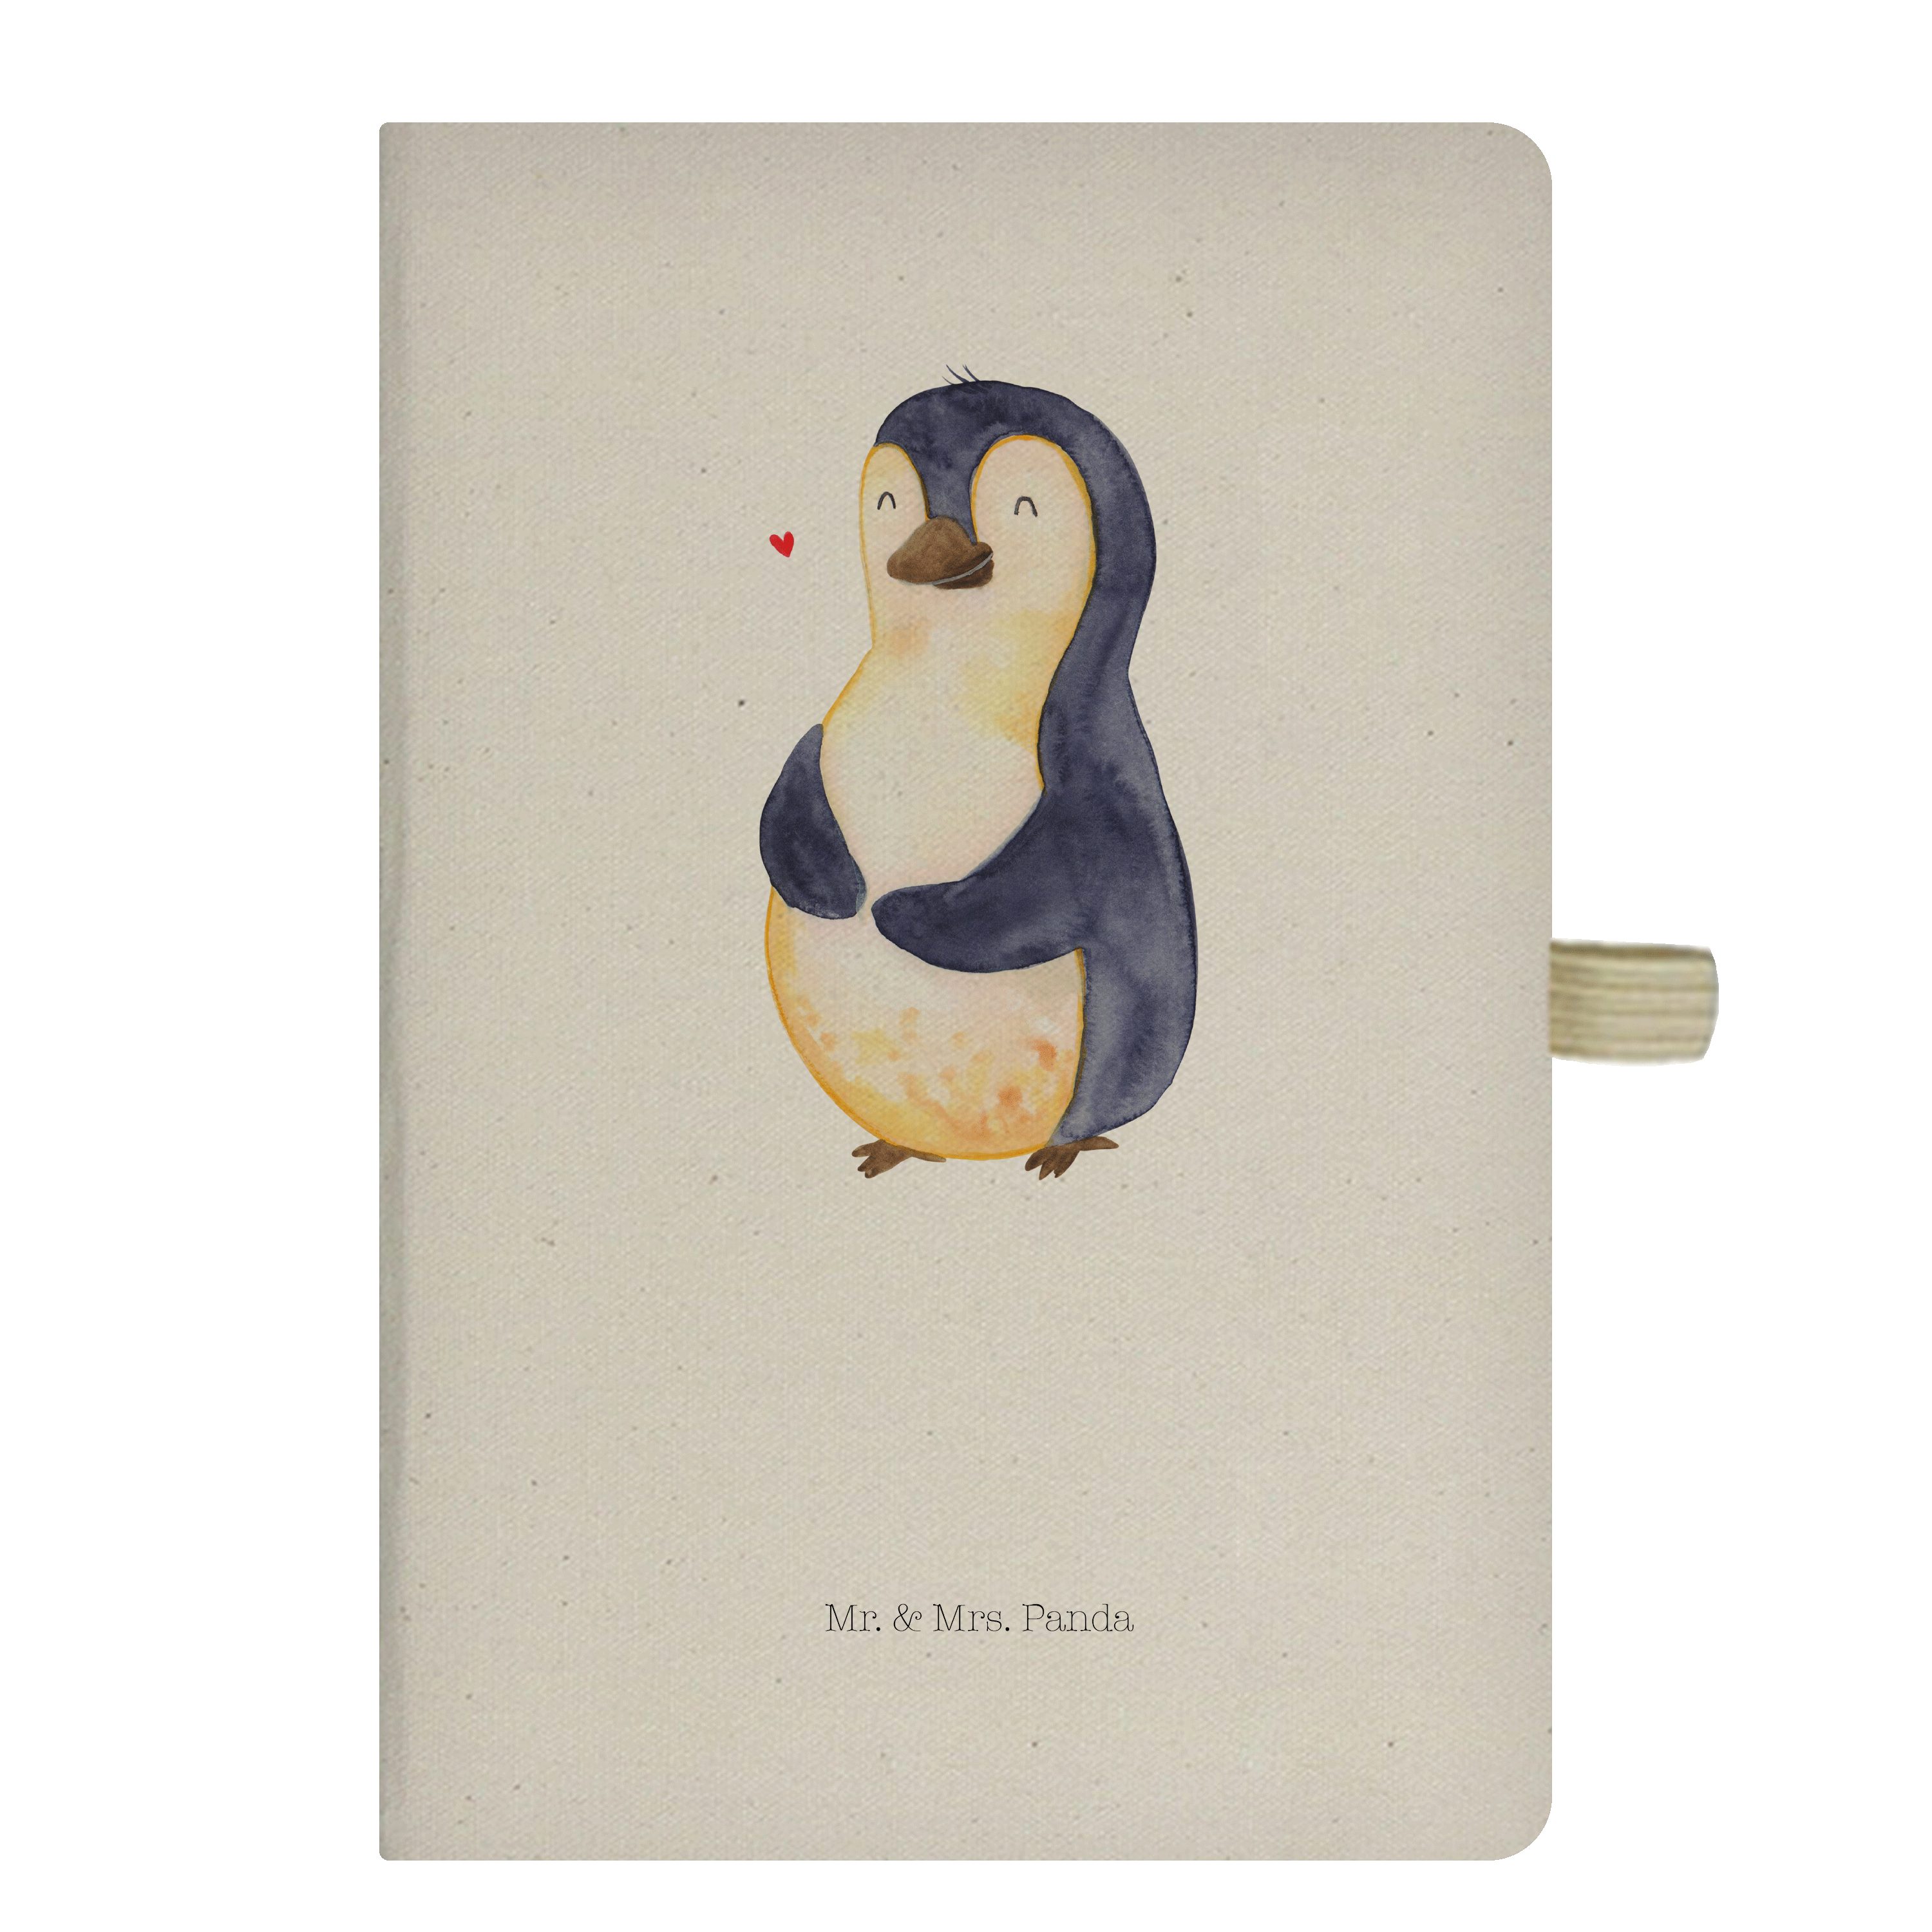 Mr. & Mrs. Panda Notizbuch Pinguin Diät - Transparent - Geschenk, Notizblock, Schreibbuch, Journ Mr. & Mrs. Panda